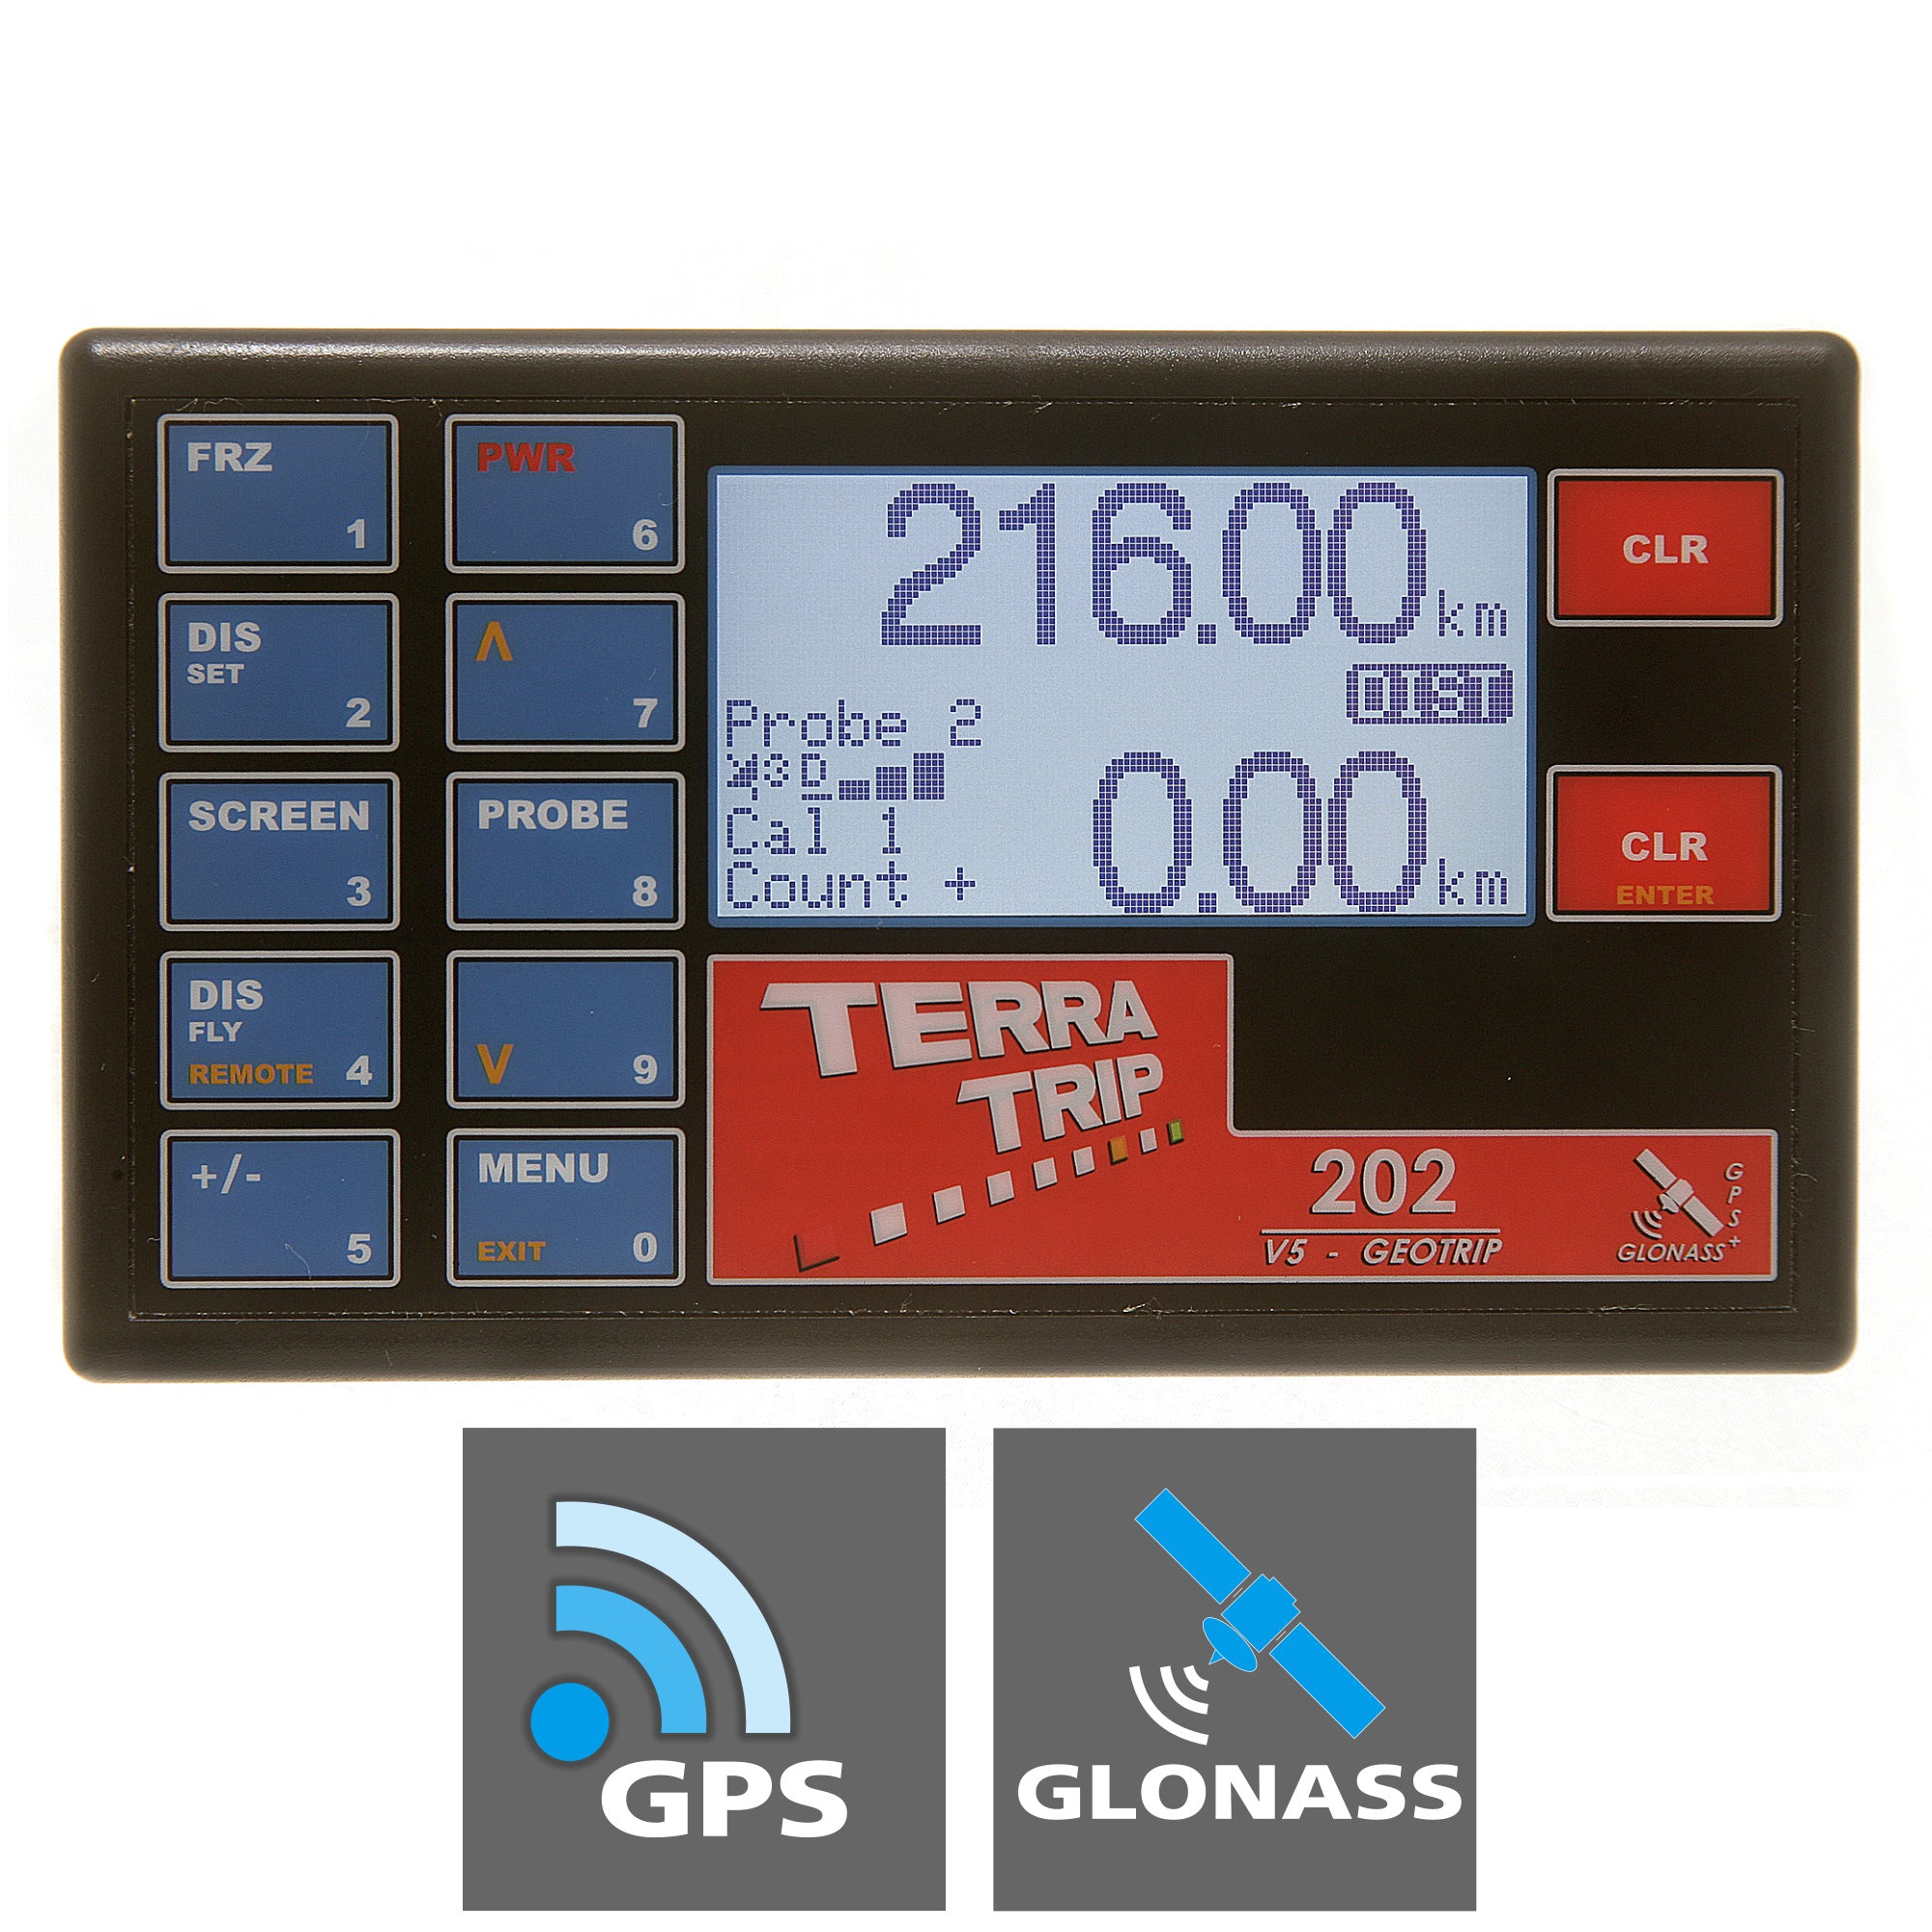 Terratrip 202 GeoTrip avec GPS et GLONASS V5